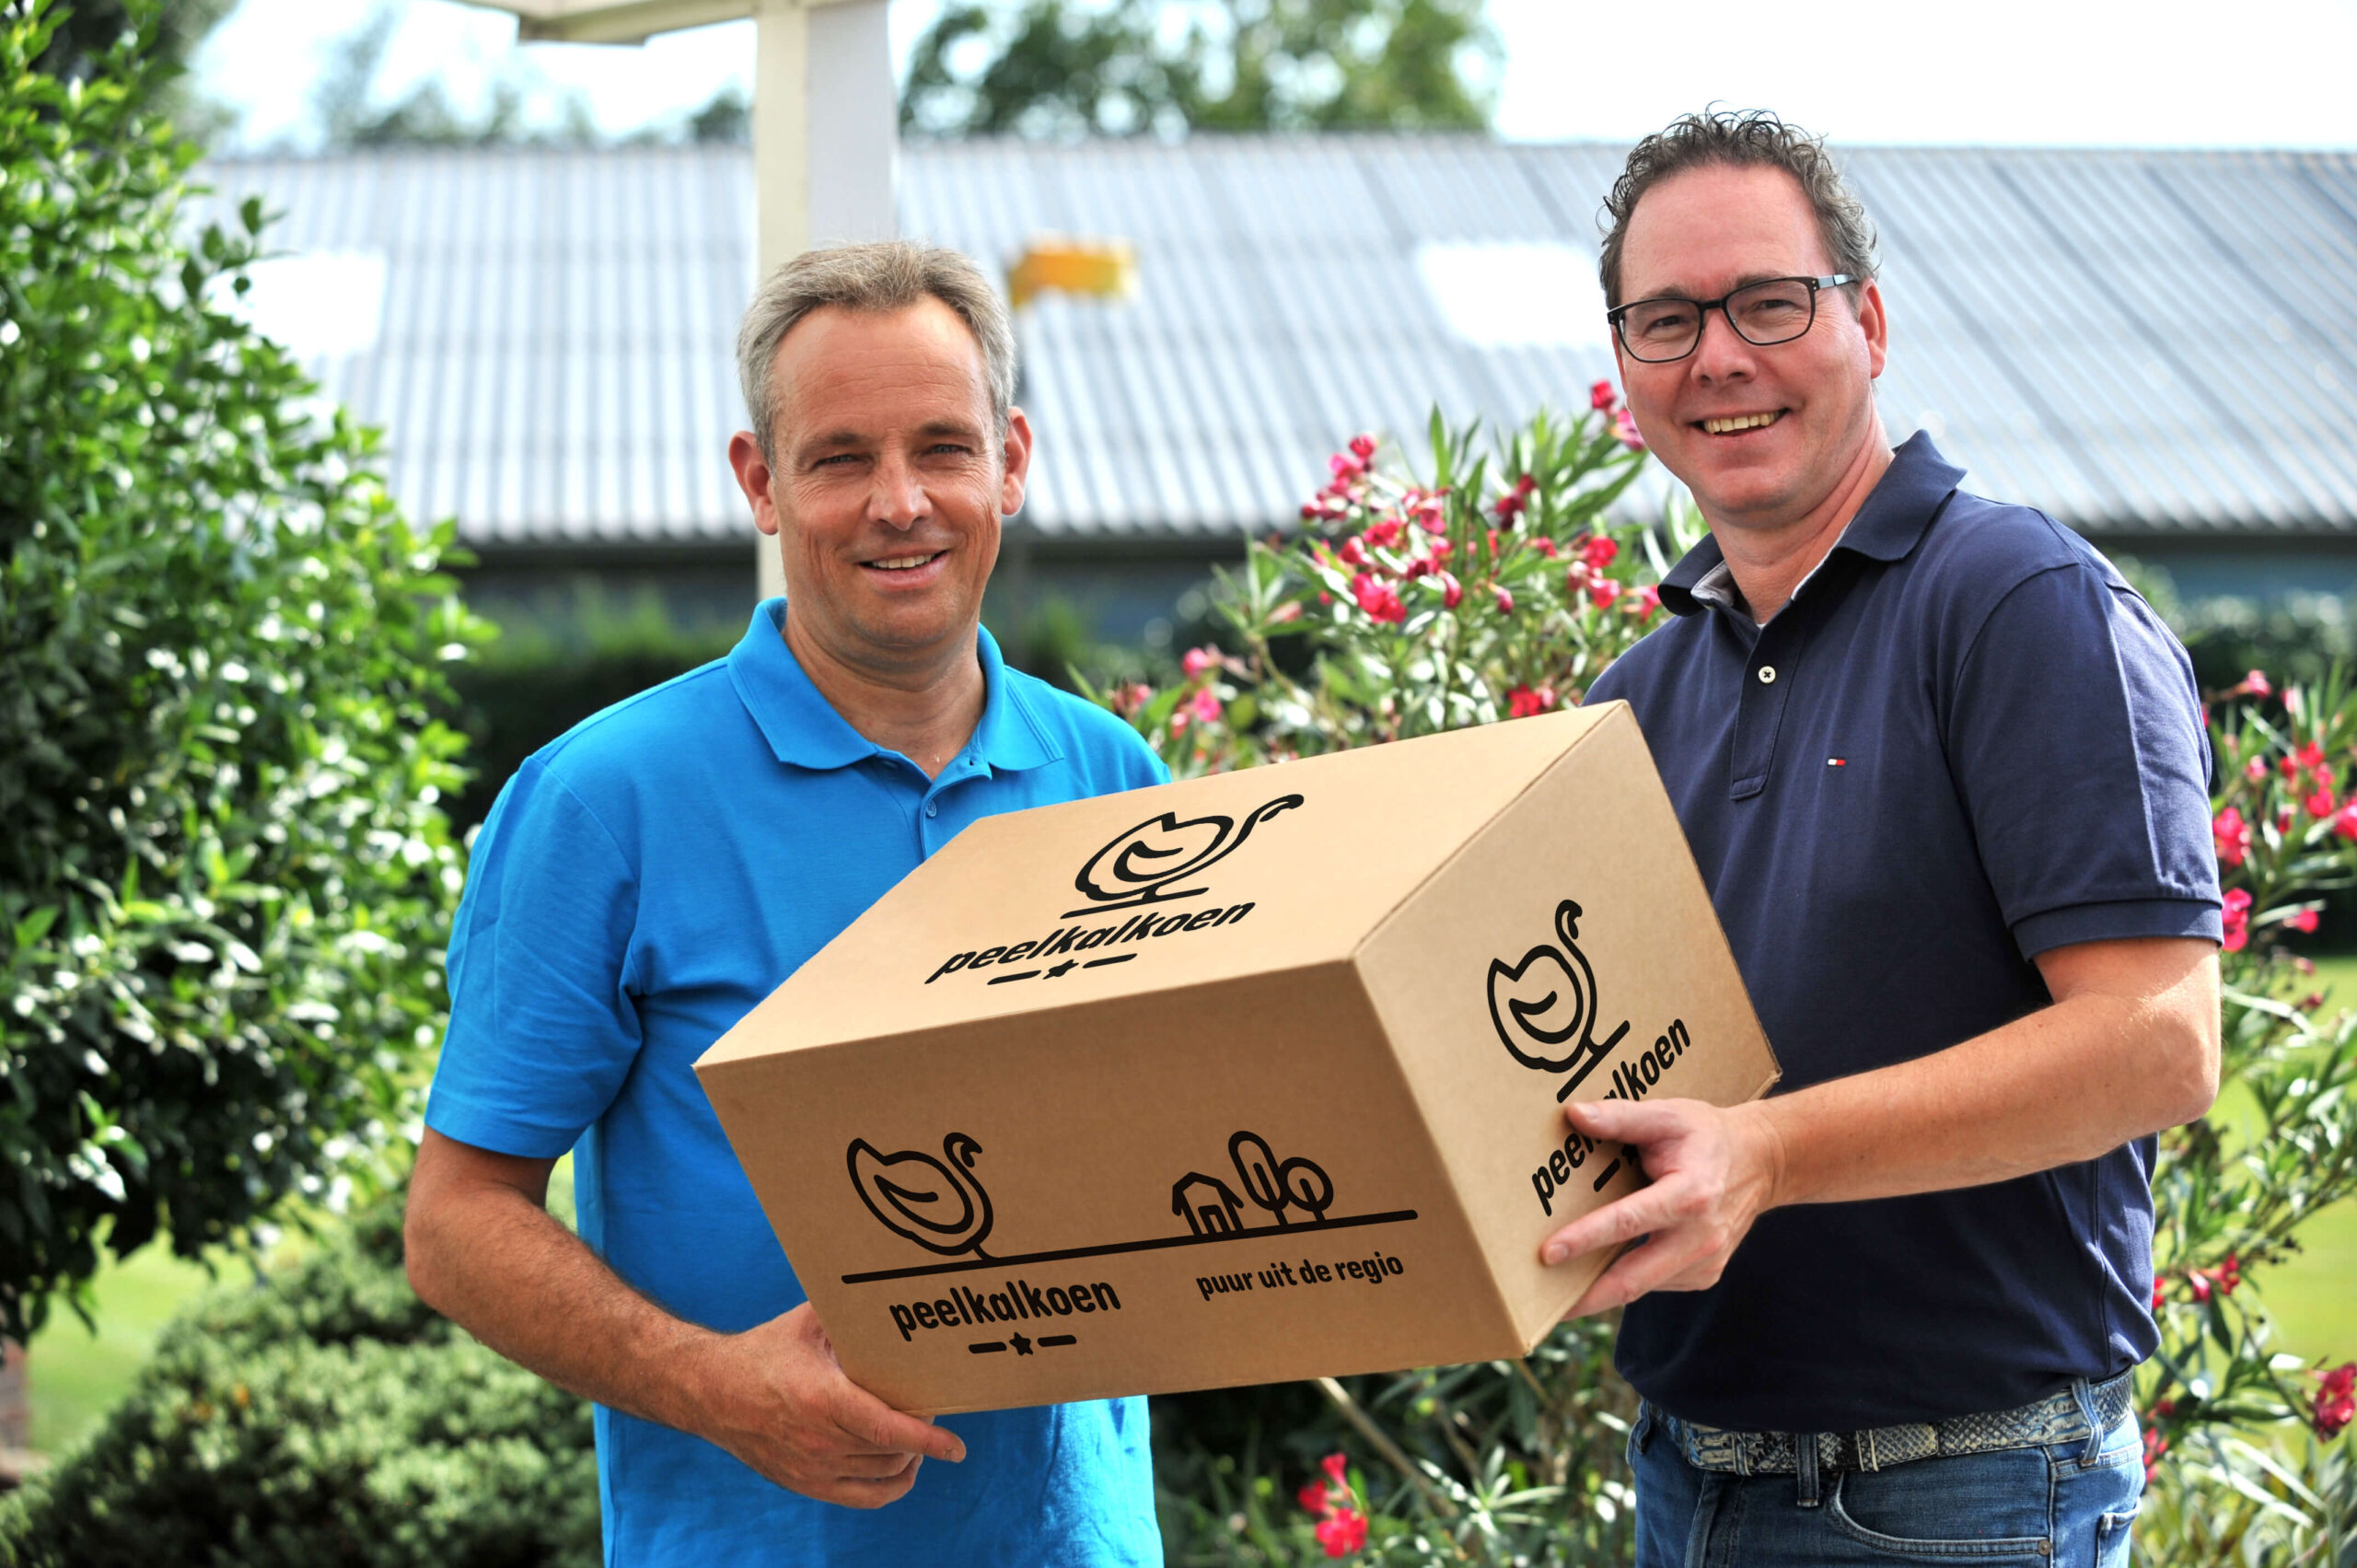 Foto Twan Jenniskens en Ronald Cornelissen met de zelf ontwikkelde duurzame koel- en vriesverpakking